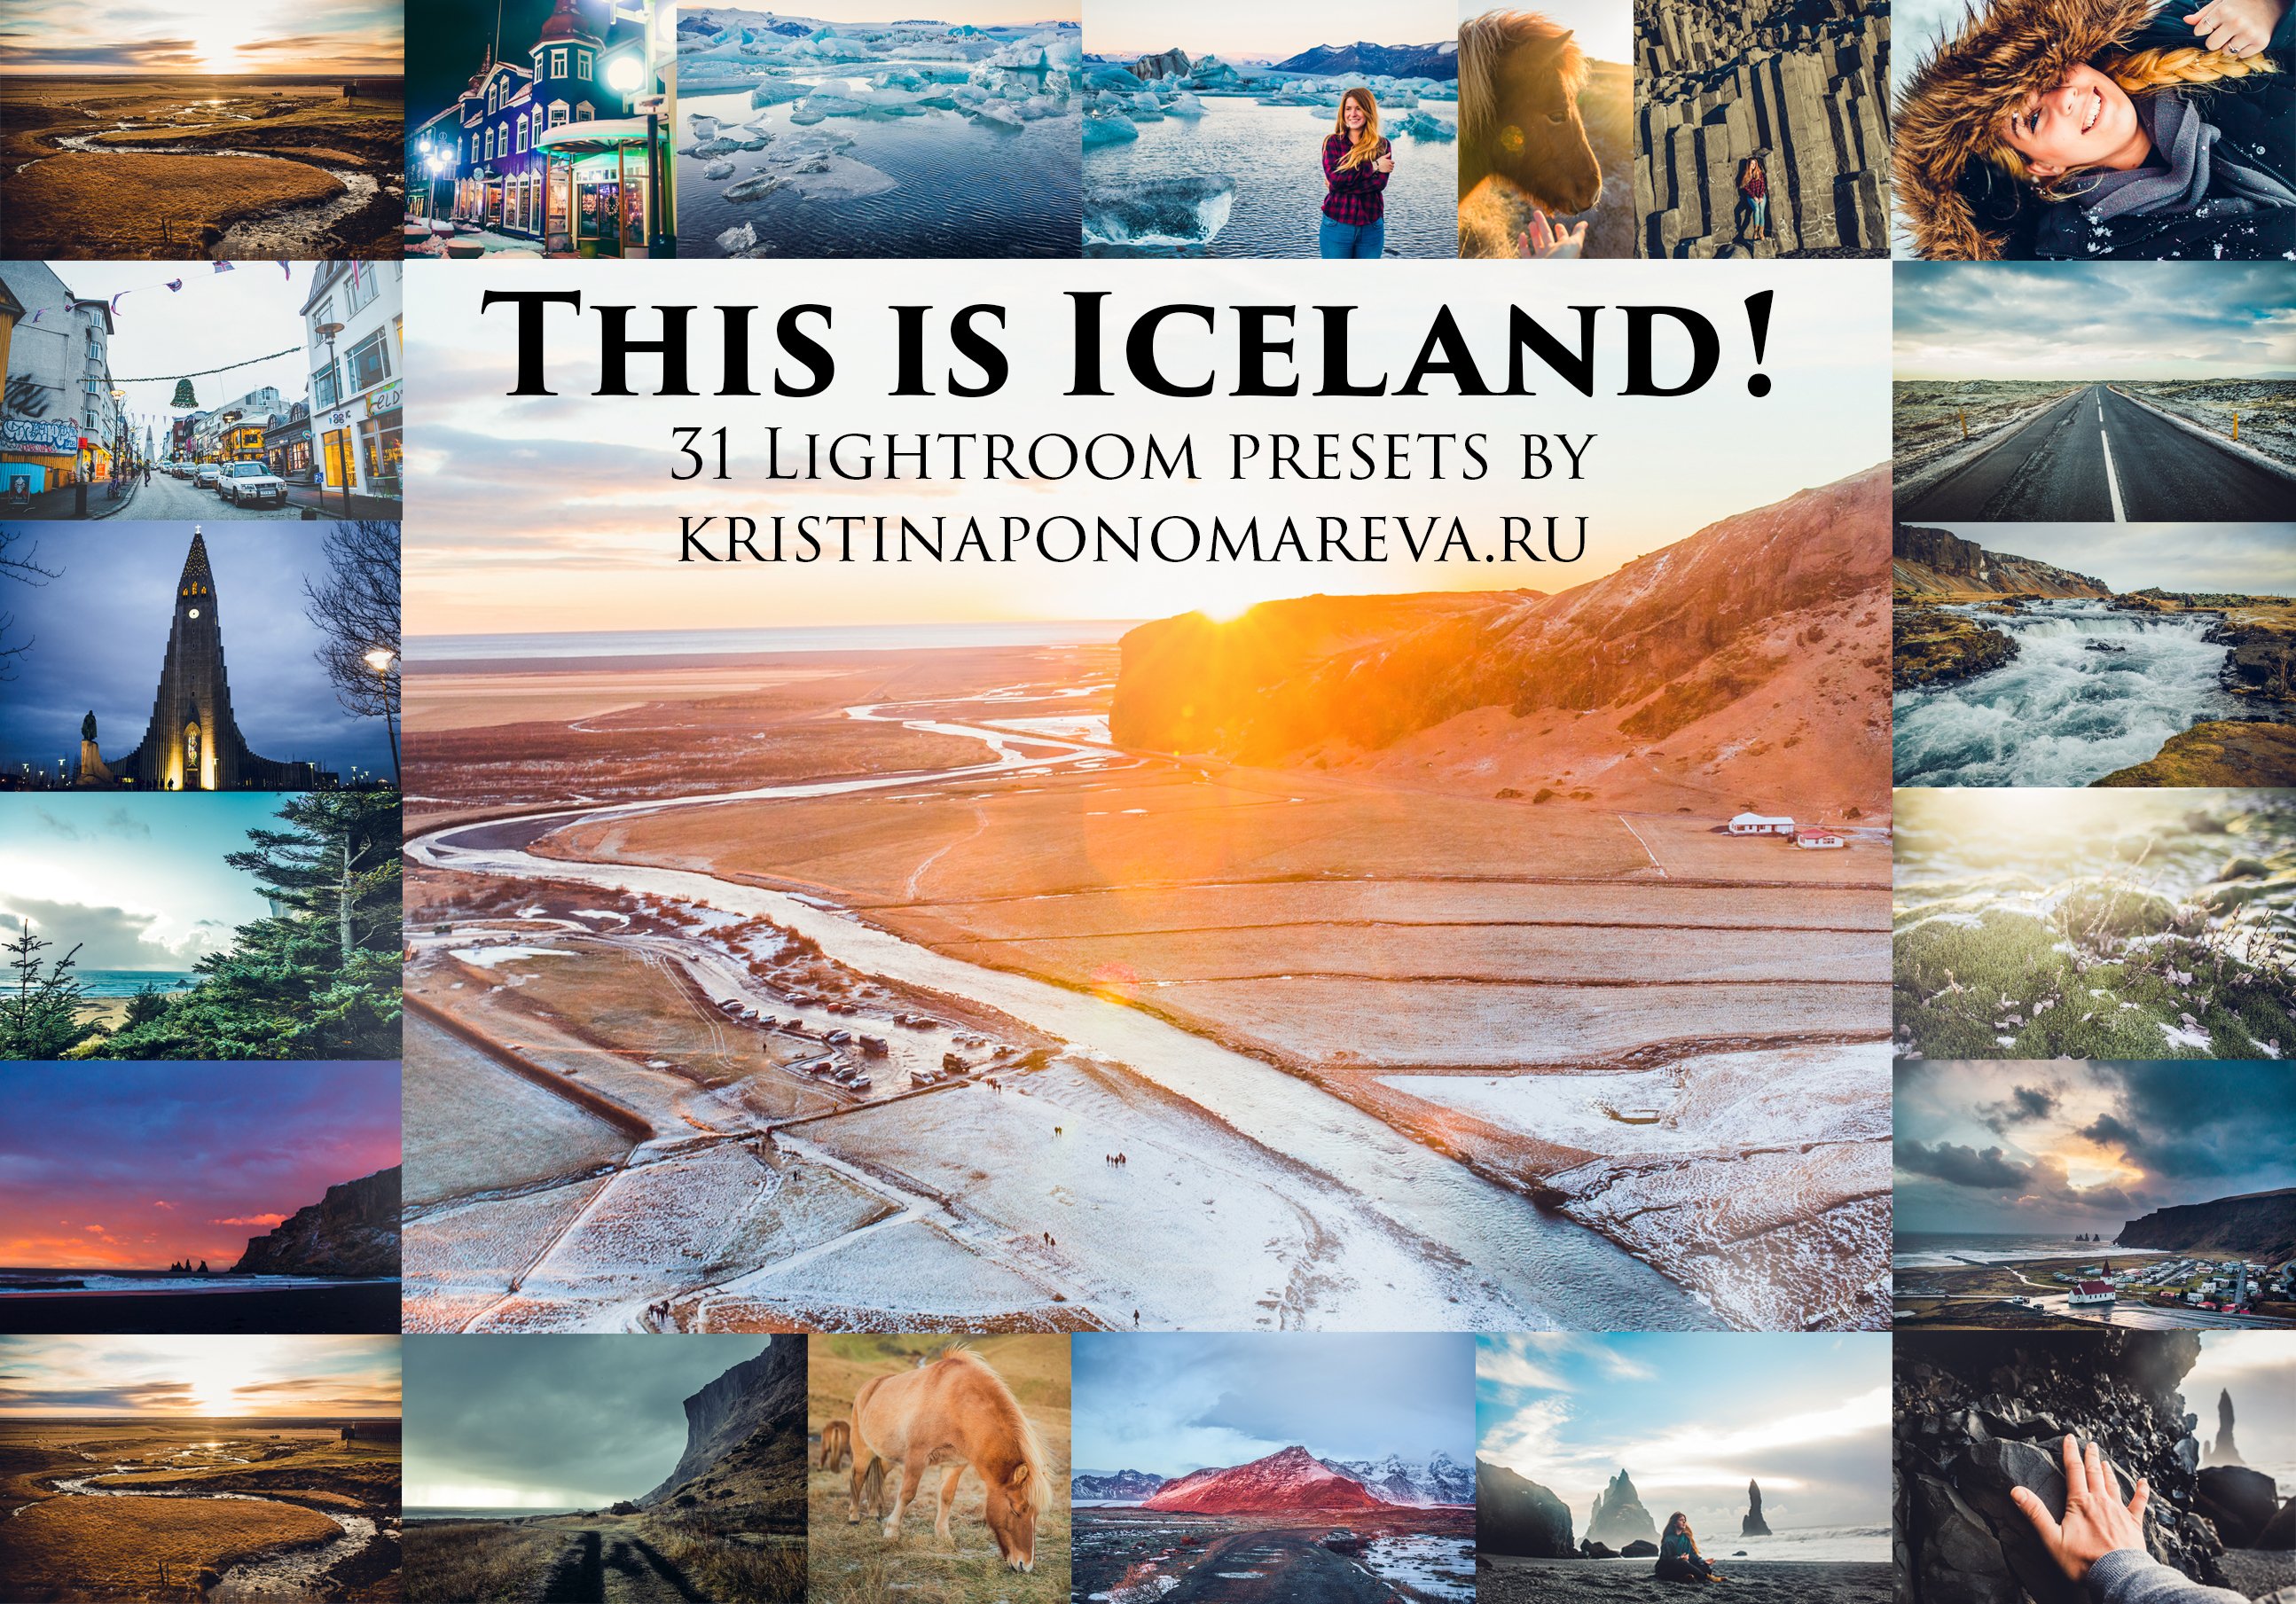 LIGHTROOM PRESETS ICELAND! travelcover image.